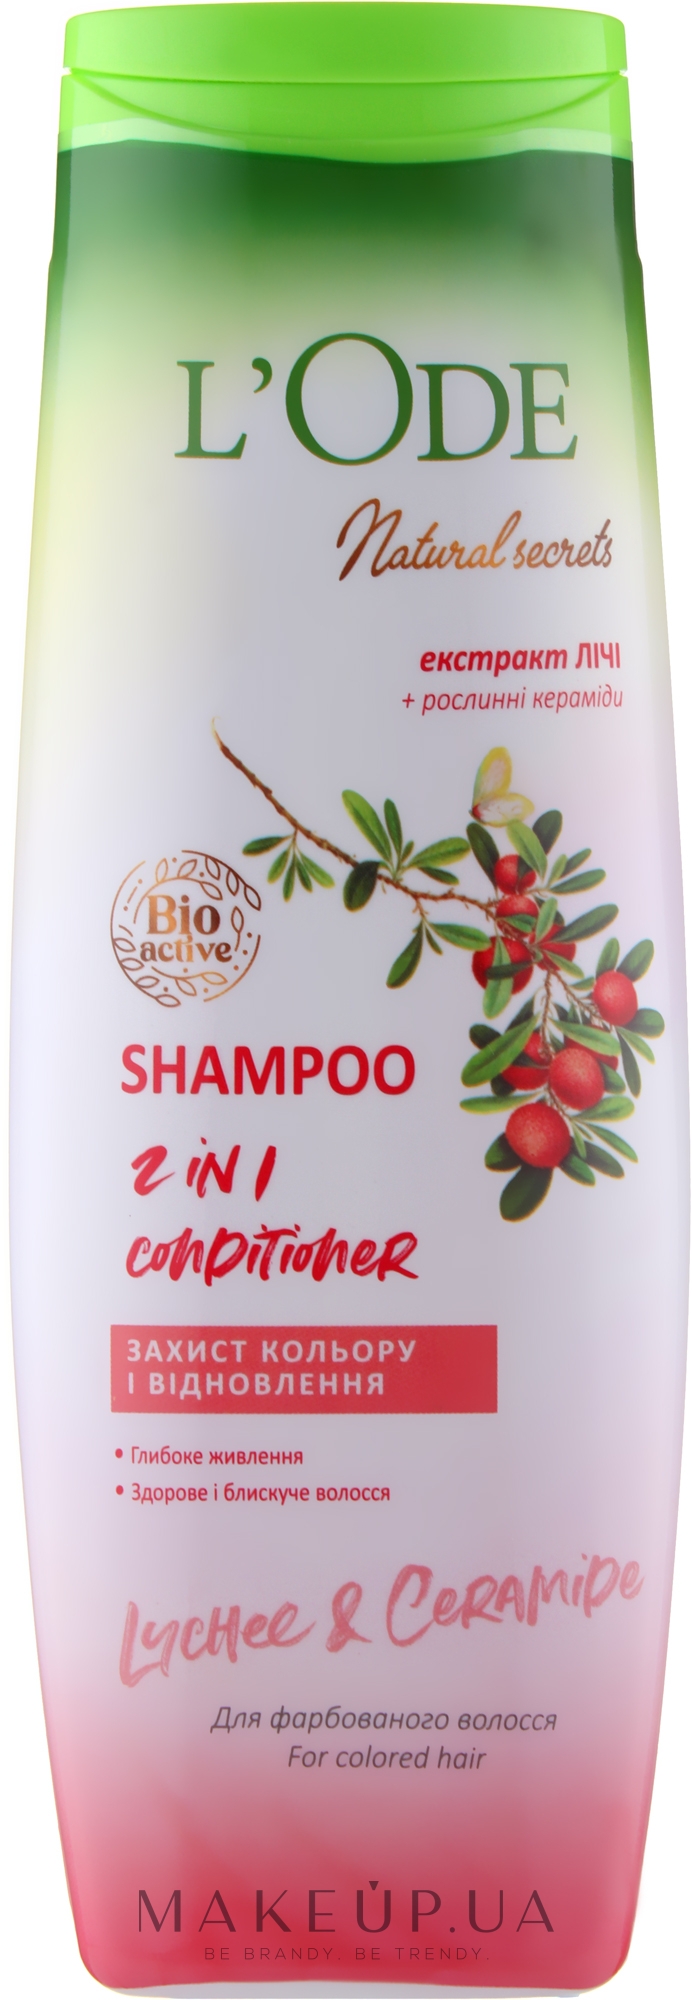 Шампунь-кондиционер "Защита цвета и восстановление" для окрашенных волос - L'Ode Natural Secrets Shampoo 2 In 1 Conditioner Lychee & Ceramide — фото 400ml